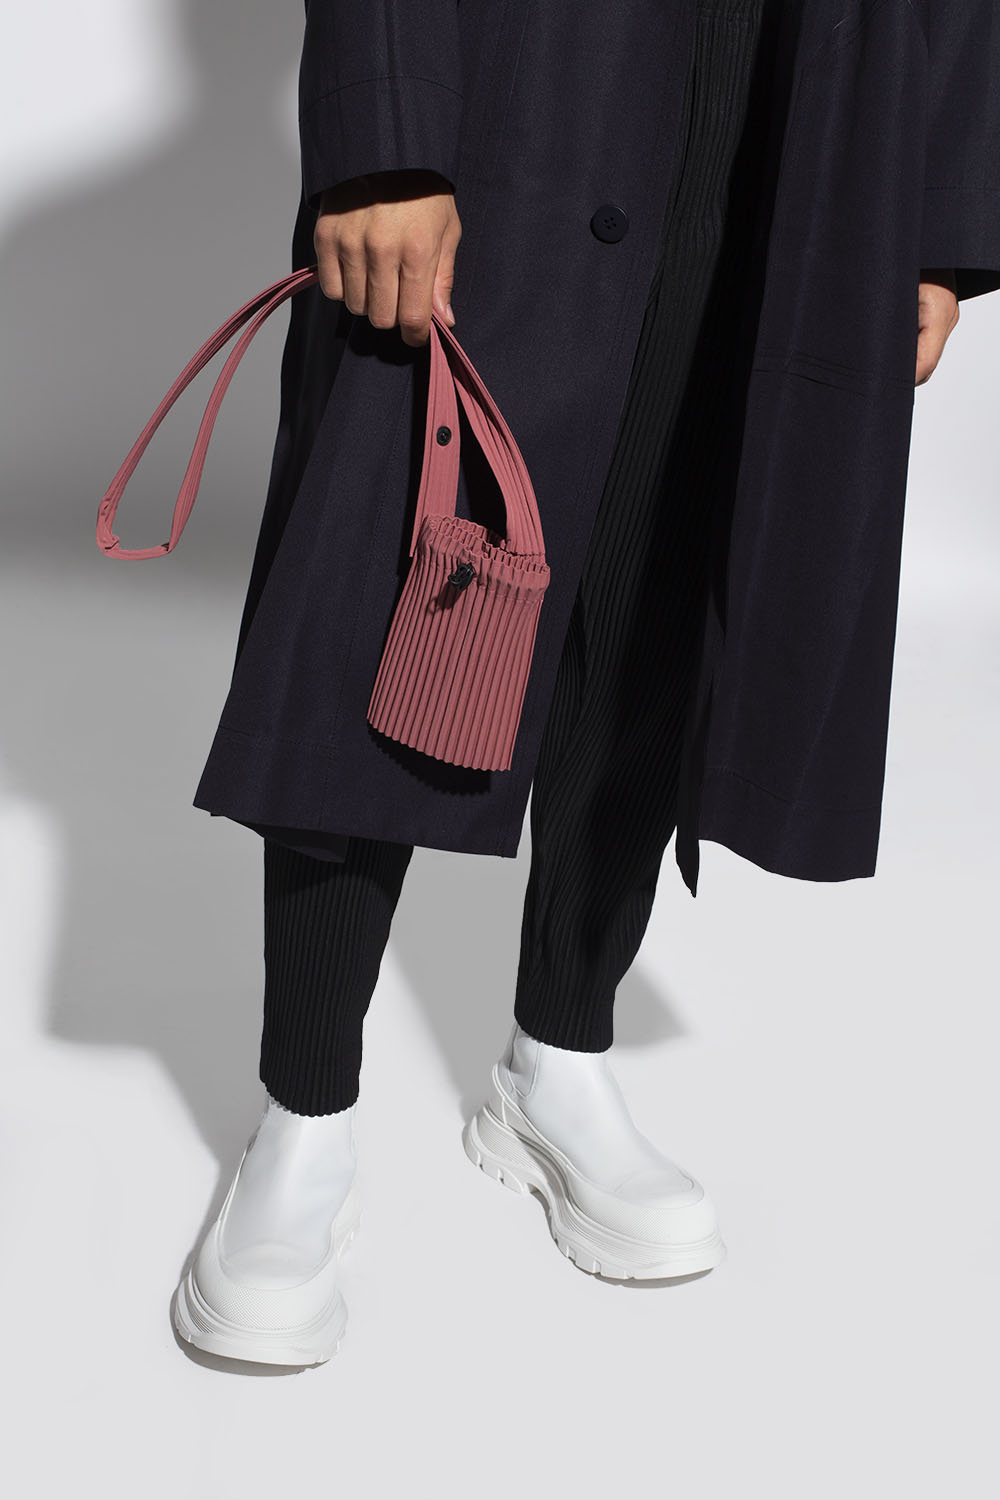 Louis Vuitton Twist MM Bag - Vitkac shop online